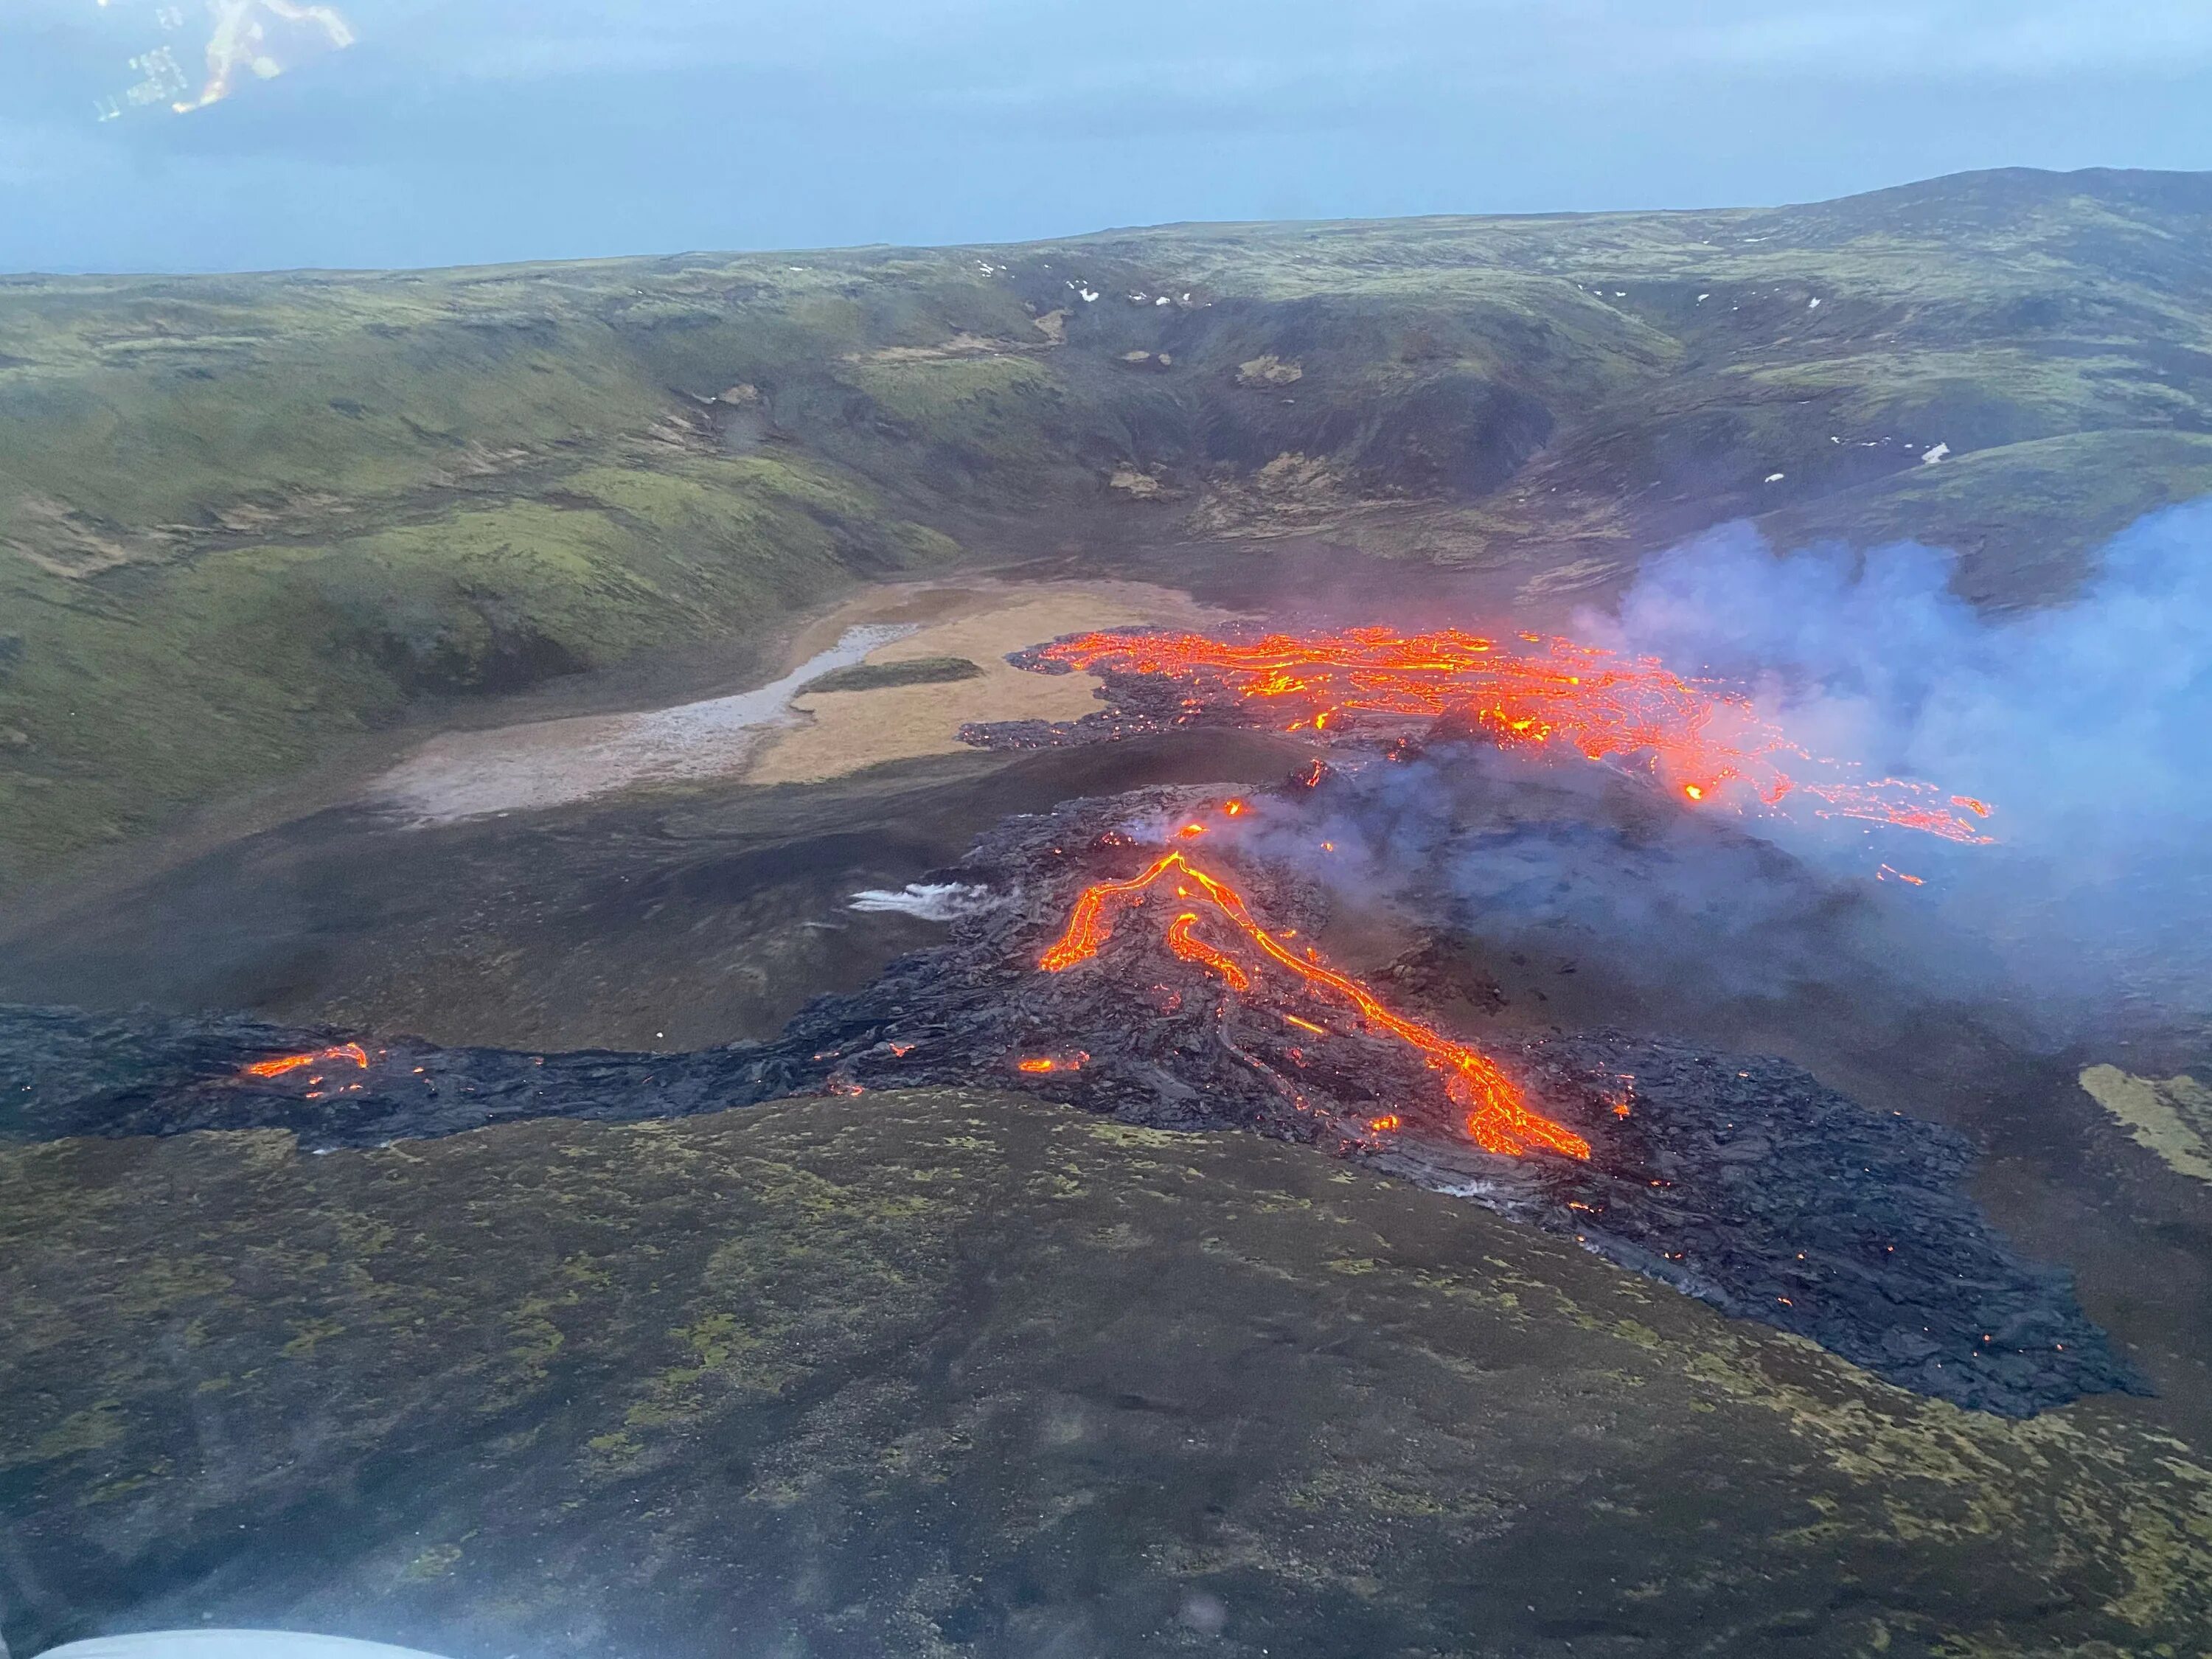 Извержение вулкана в Исландии 2021. Извержение вулкана в Исландии Эйяфьятлайокудль. Вулкан Исландии Эйяфьятлайокудль 2010. Вулкан Эйяфьятлайокудль извержение 2010.